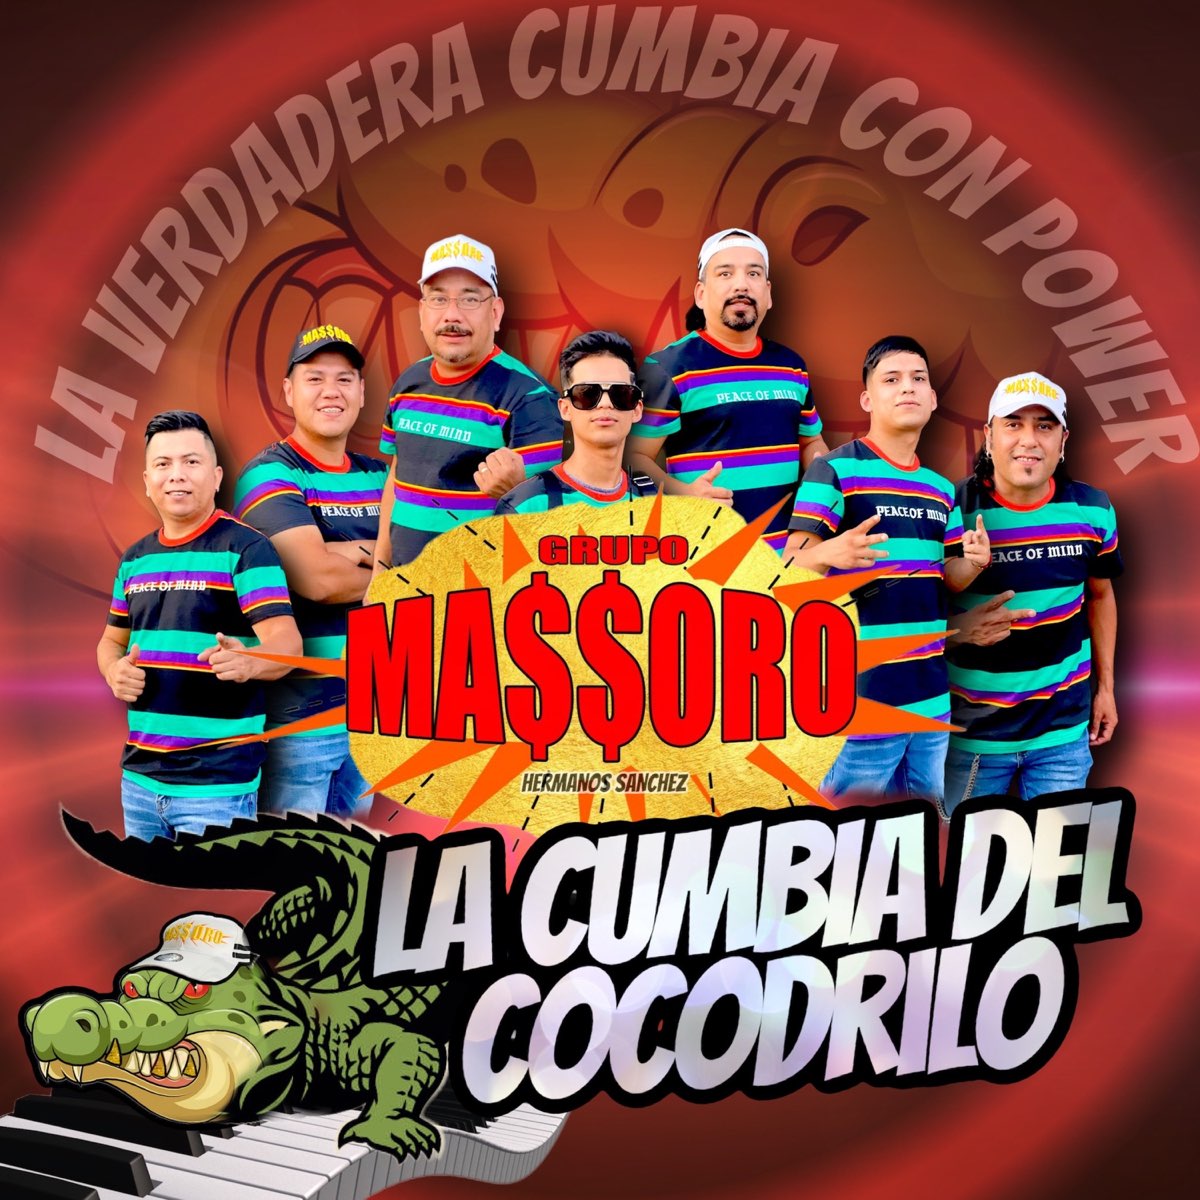 La Cumbia del Cocodrilo - Single by Grupo Massoro on Apple Music